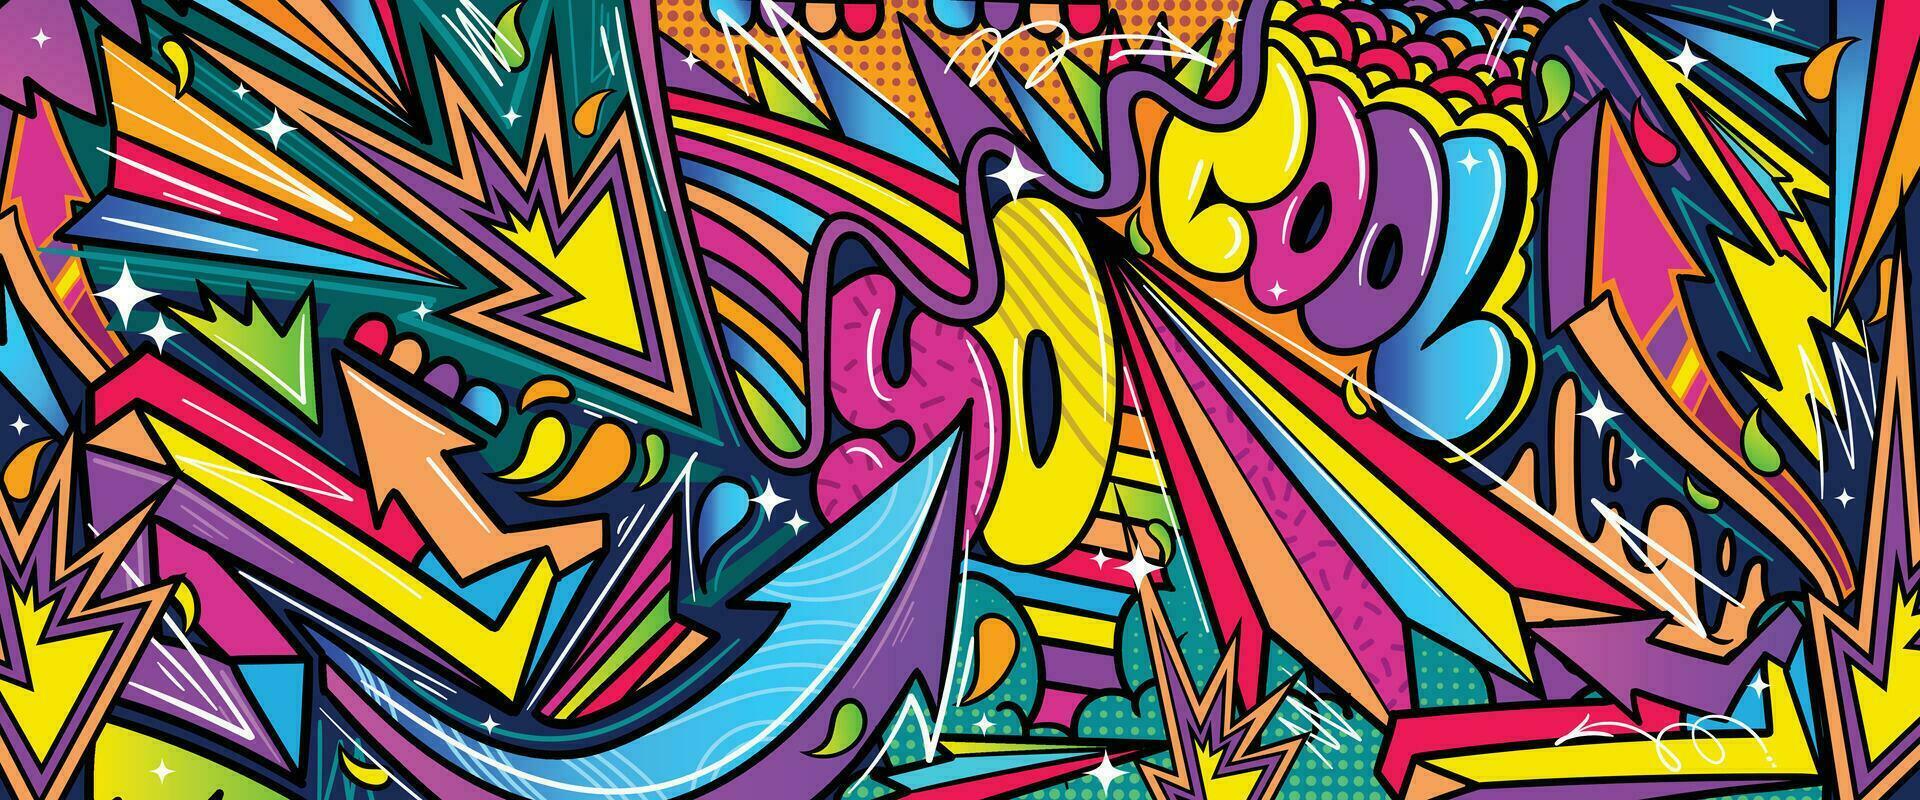 graffiti klotter konst bakgrund med vibrerande färger ritad för hand stil. gata konst graffiti urban tema för grafik, banderoller, och textilier i vektor formatera